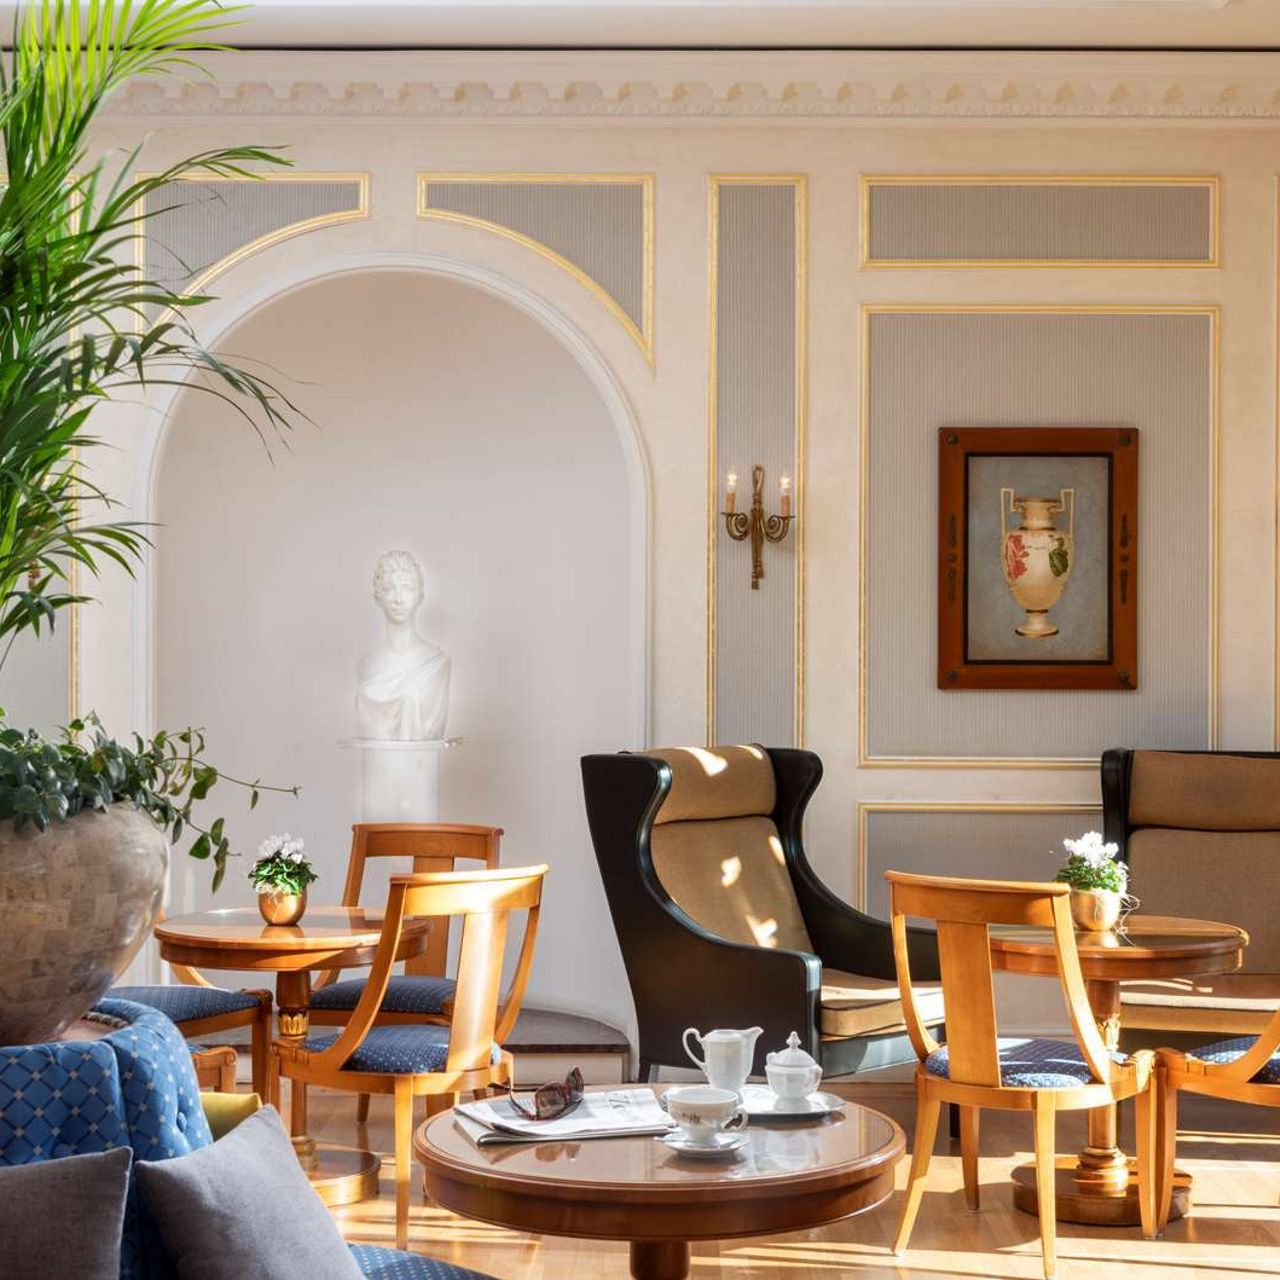 Best Western Premier Grand Hotel Russischer Hof - Weimar - Great prices at  HOTEL INFO